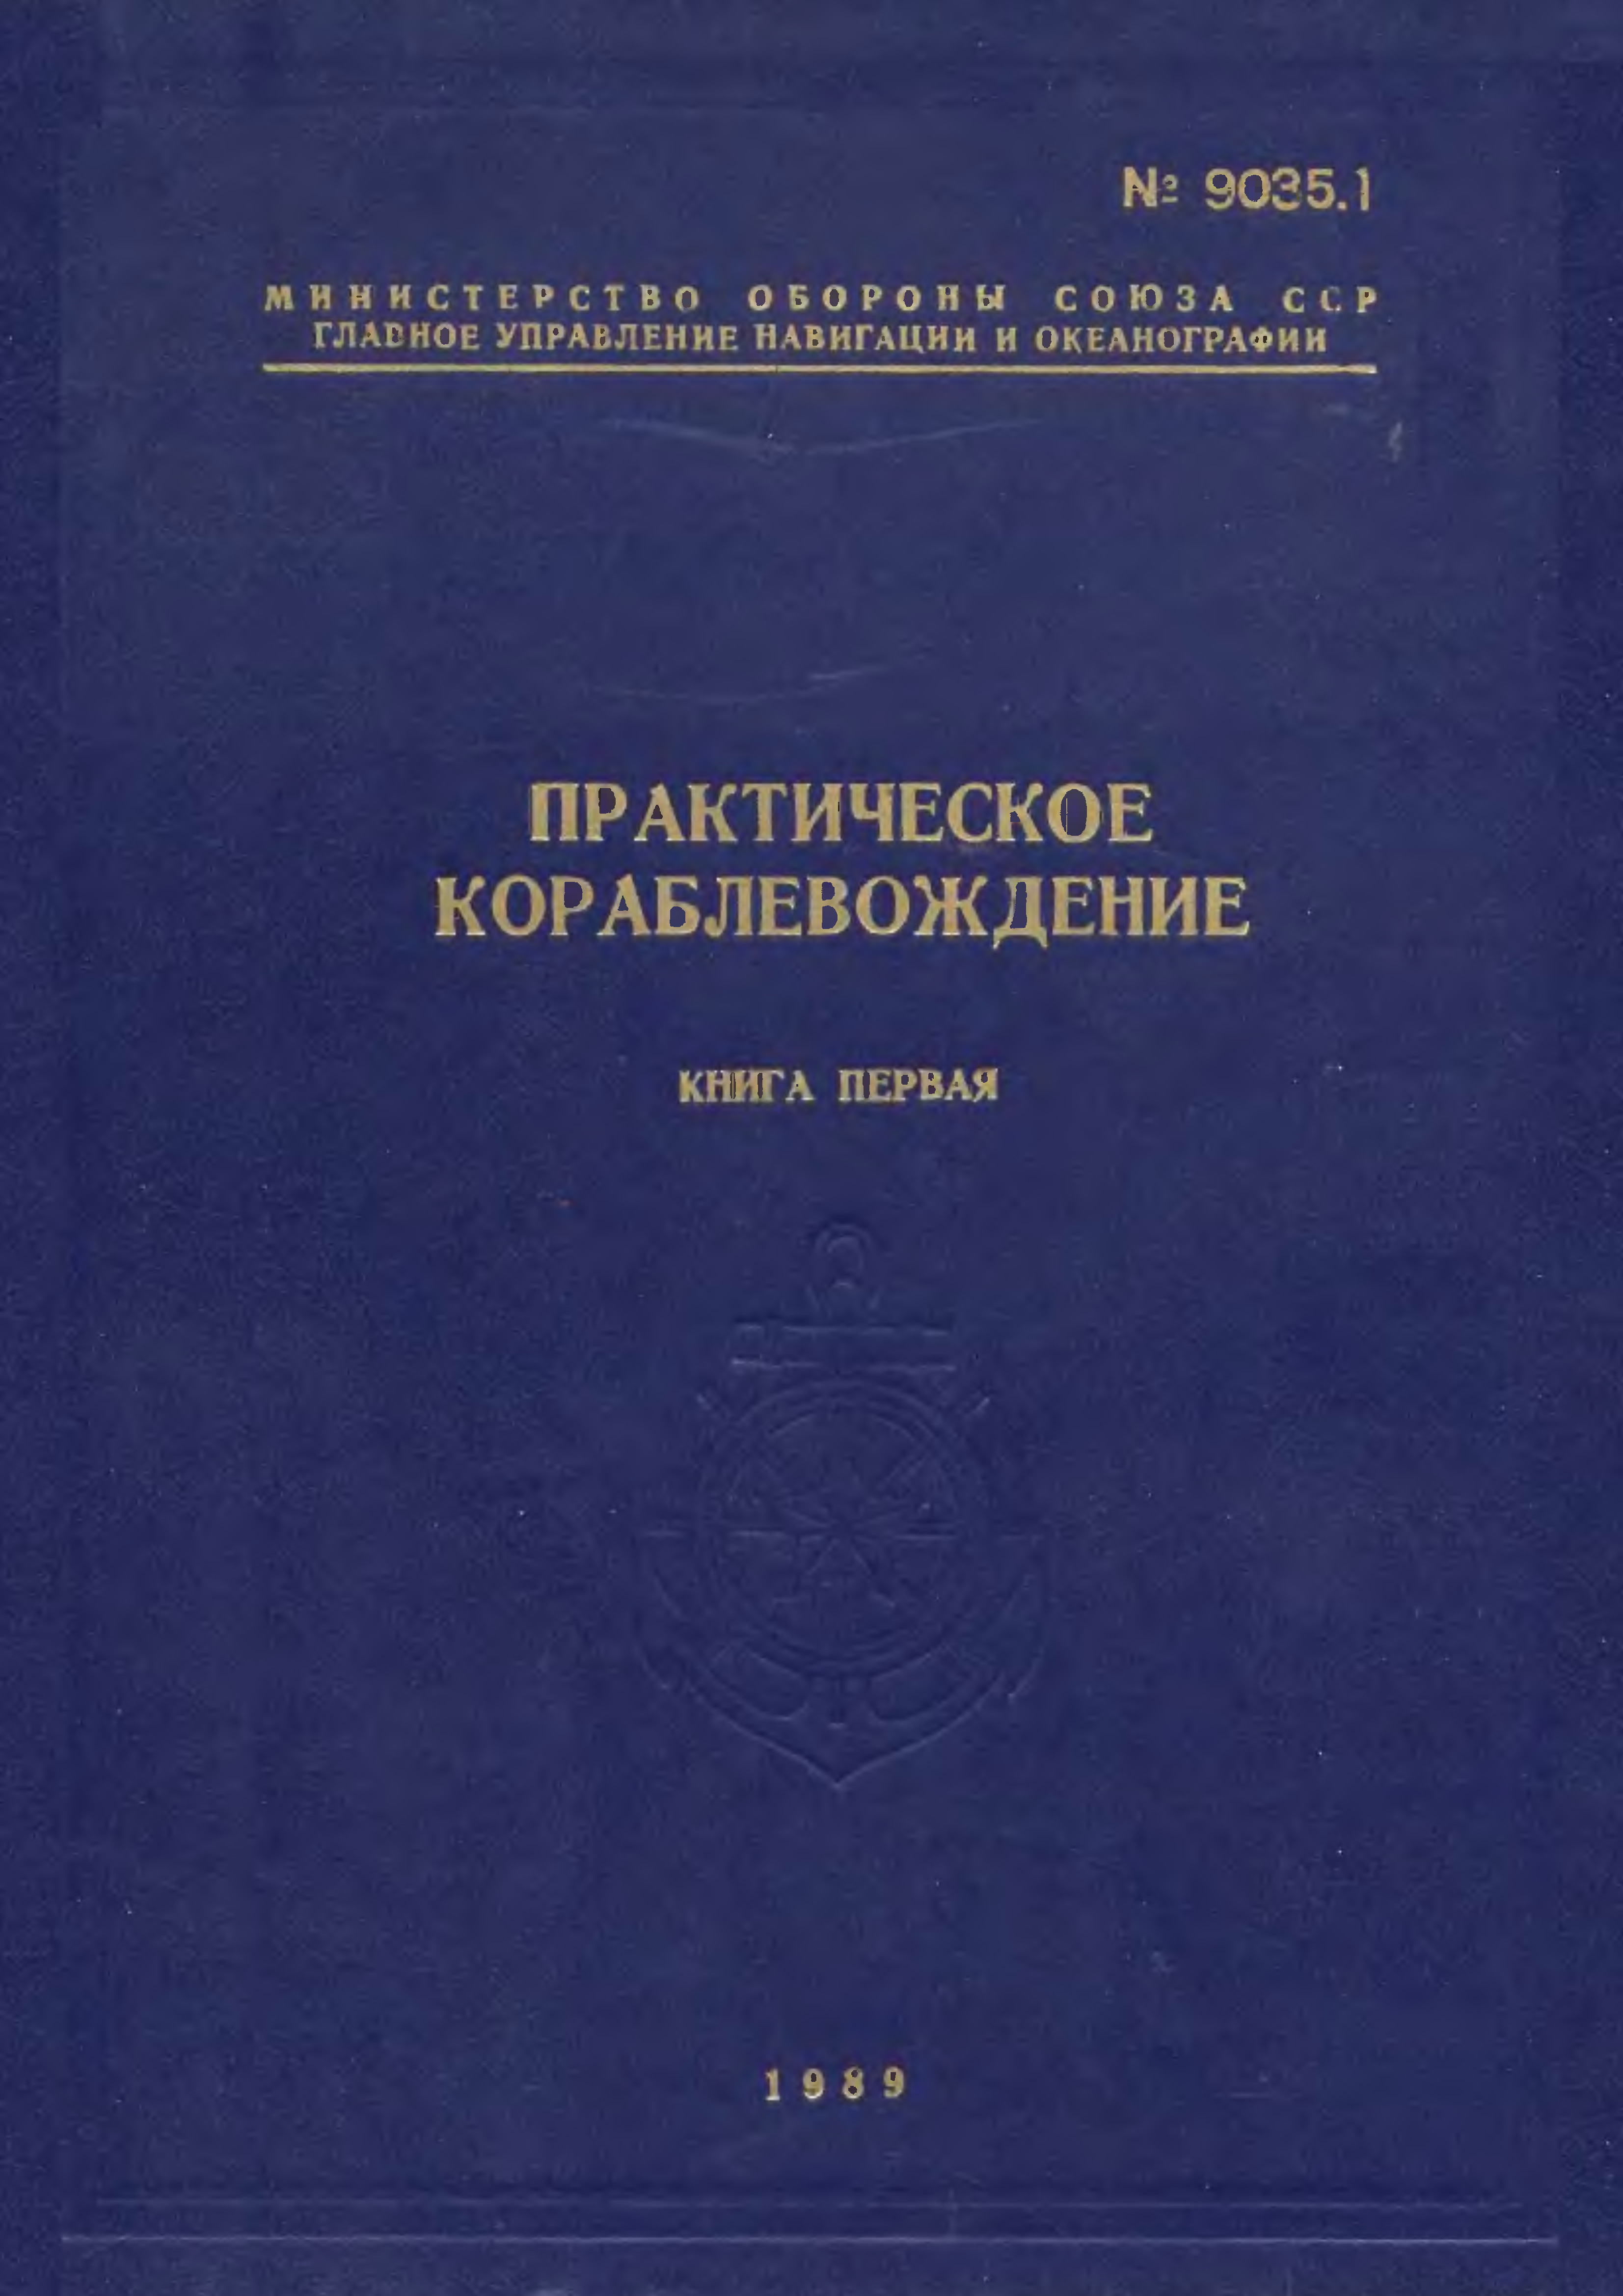 Мотрохов А.Н. (ред) Практическое кораблевождение. Книга первая (1989).jpg